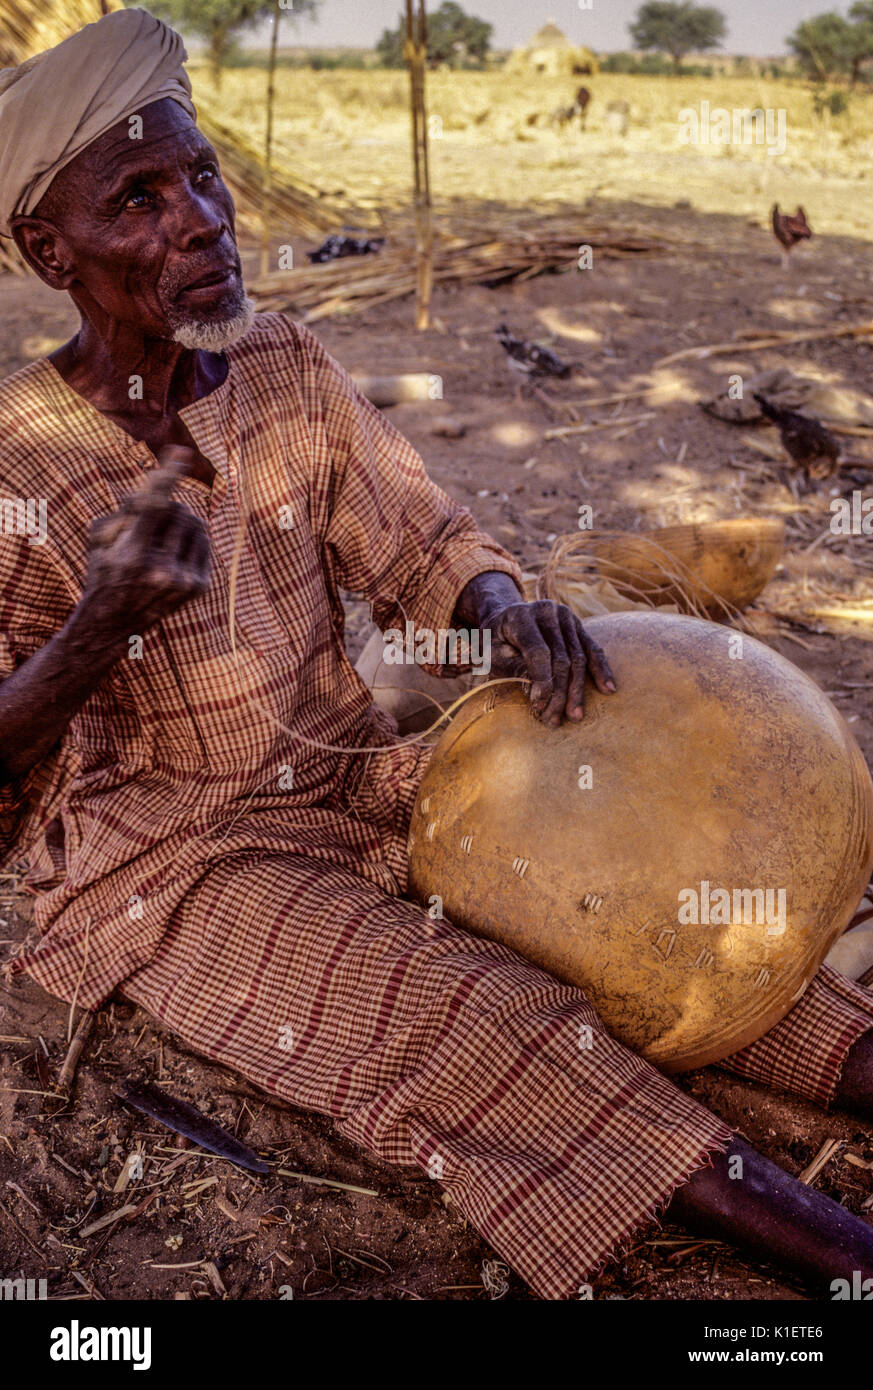 Níger, Delaquara, África occidental. Hombre Sordo estaba arreglando una calabaza. Foto de stock